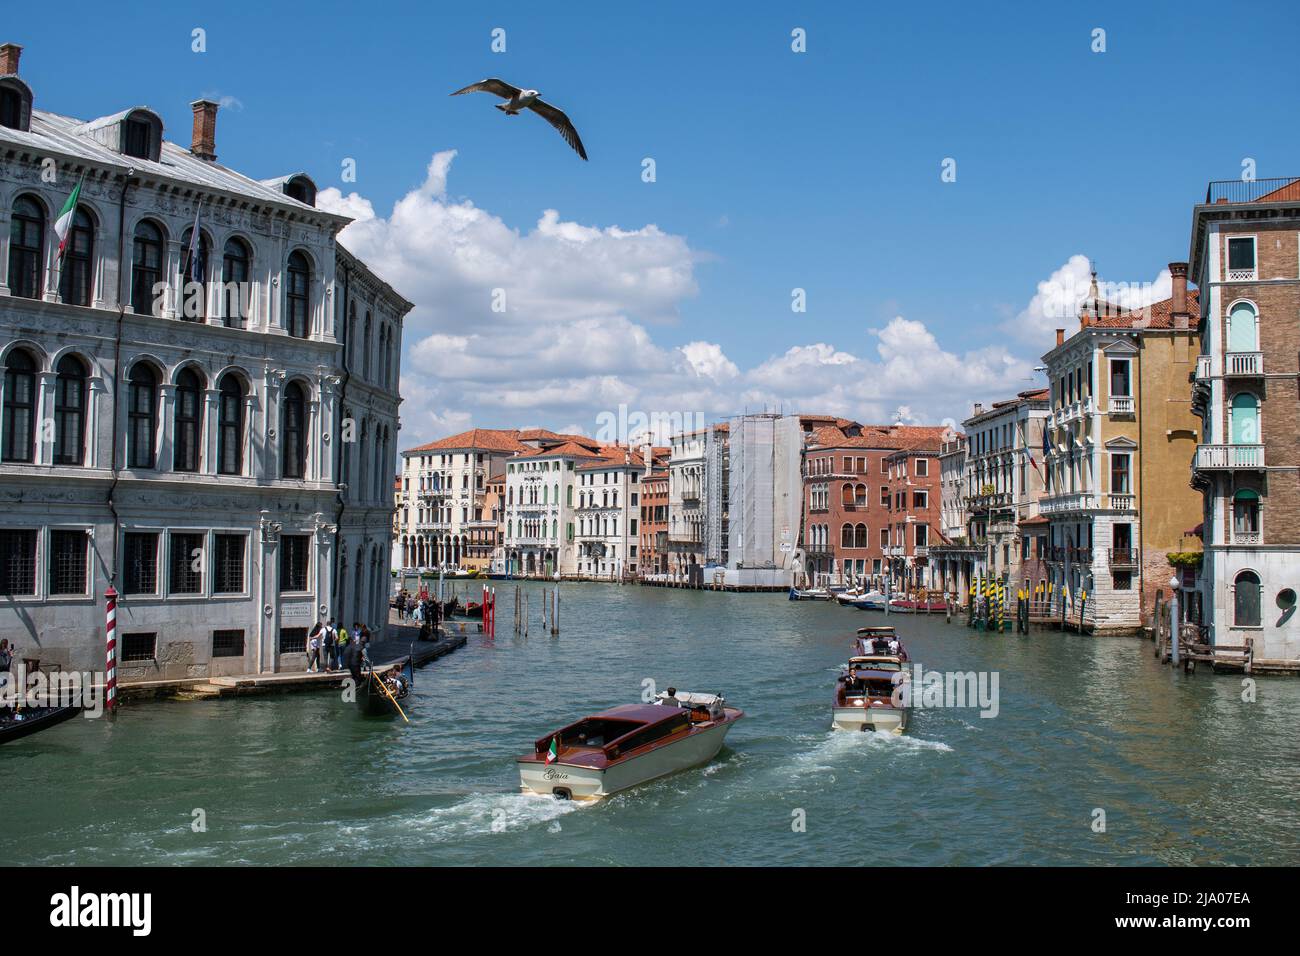 Eine Möwe fliegt über Boote auf dem Canal Grande in Venedig, Italien Stockfoto